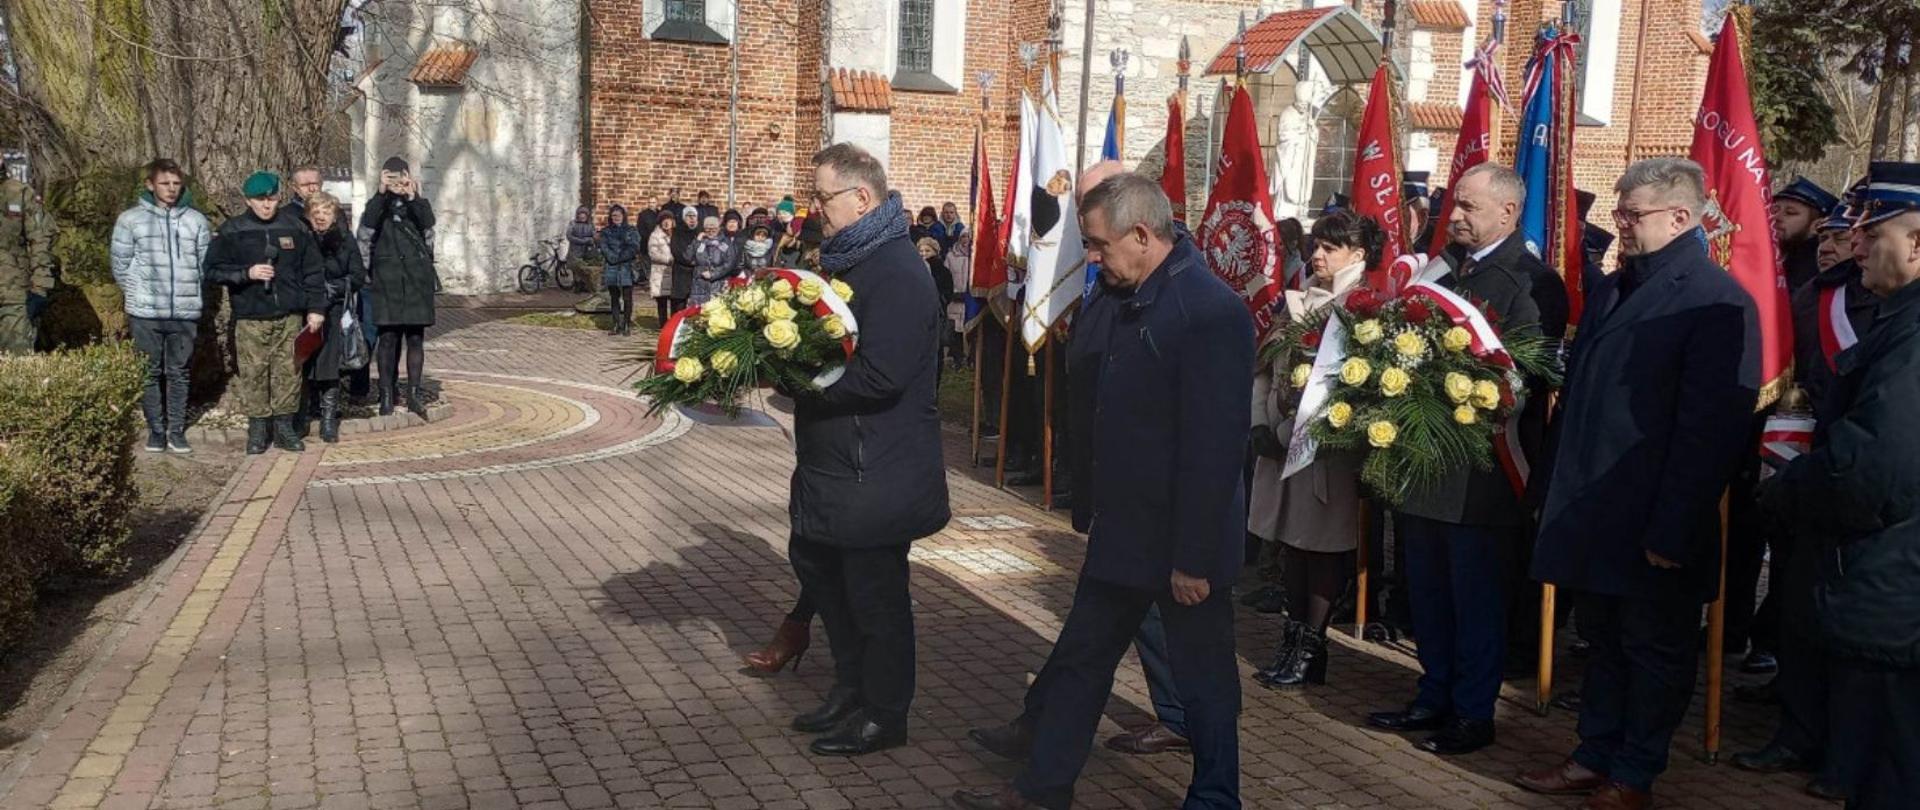 Przedstawiciele Powiatu Lipskiego składają wiązankę kwiatów przed pomnikiem.